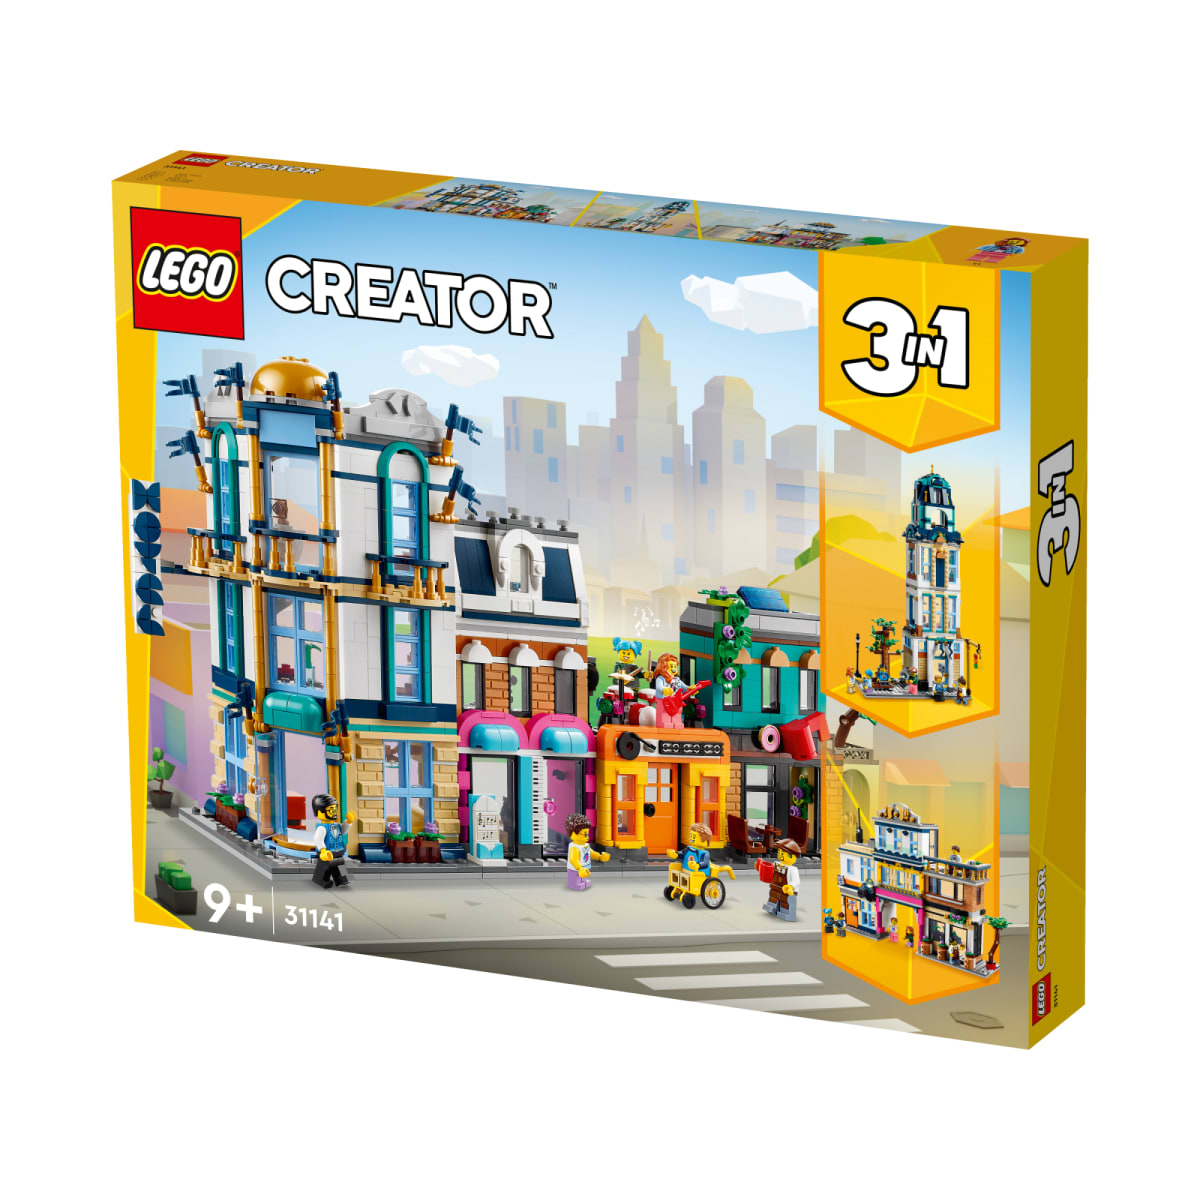 LEGO Creator 31141 Pääkatu | Karkkainen.com verkkokauppa